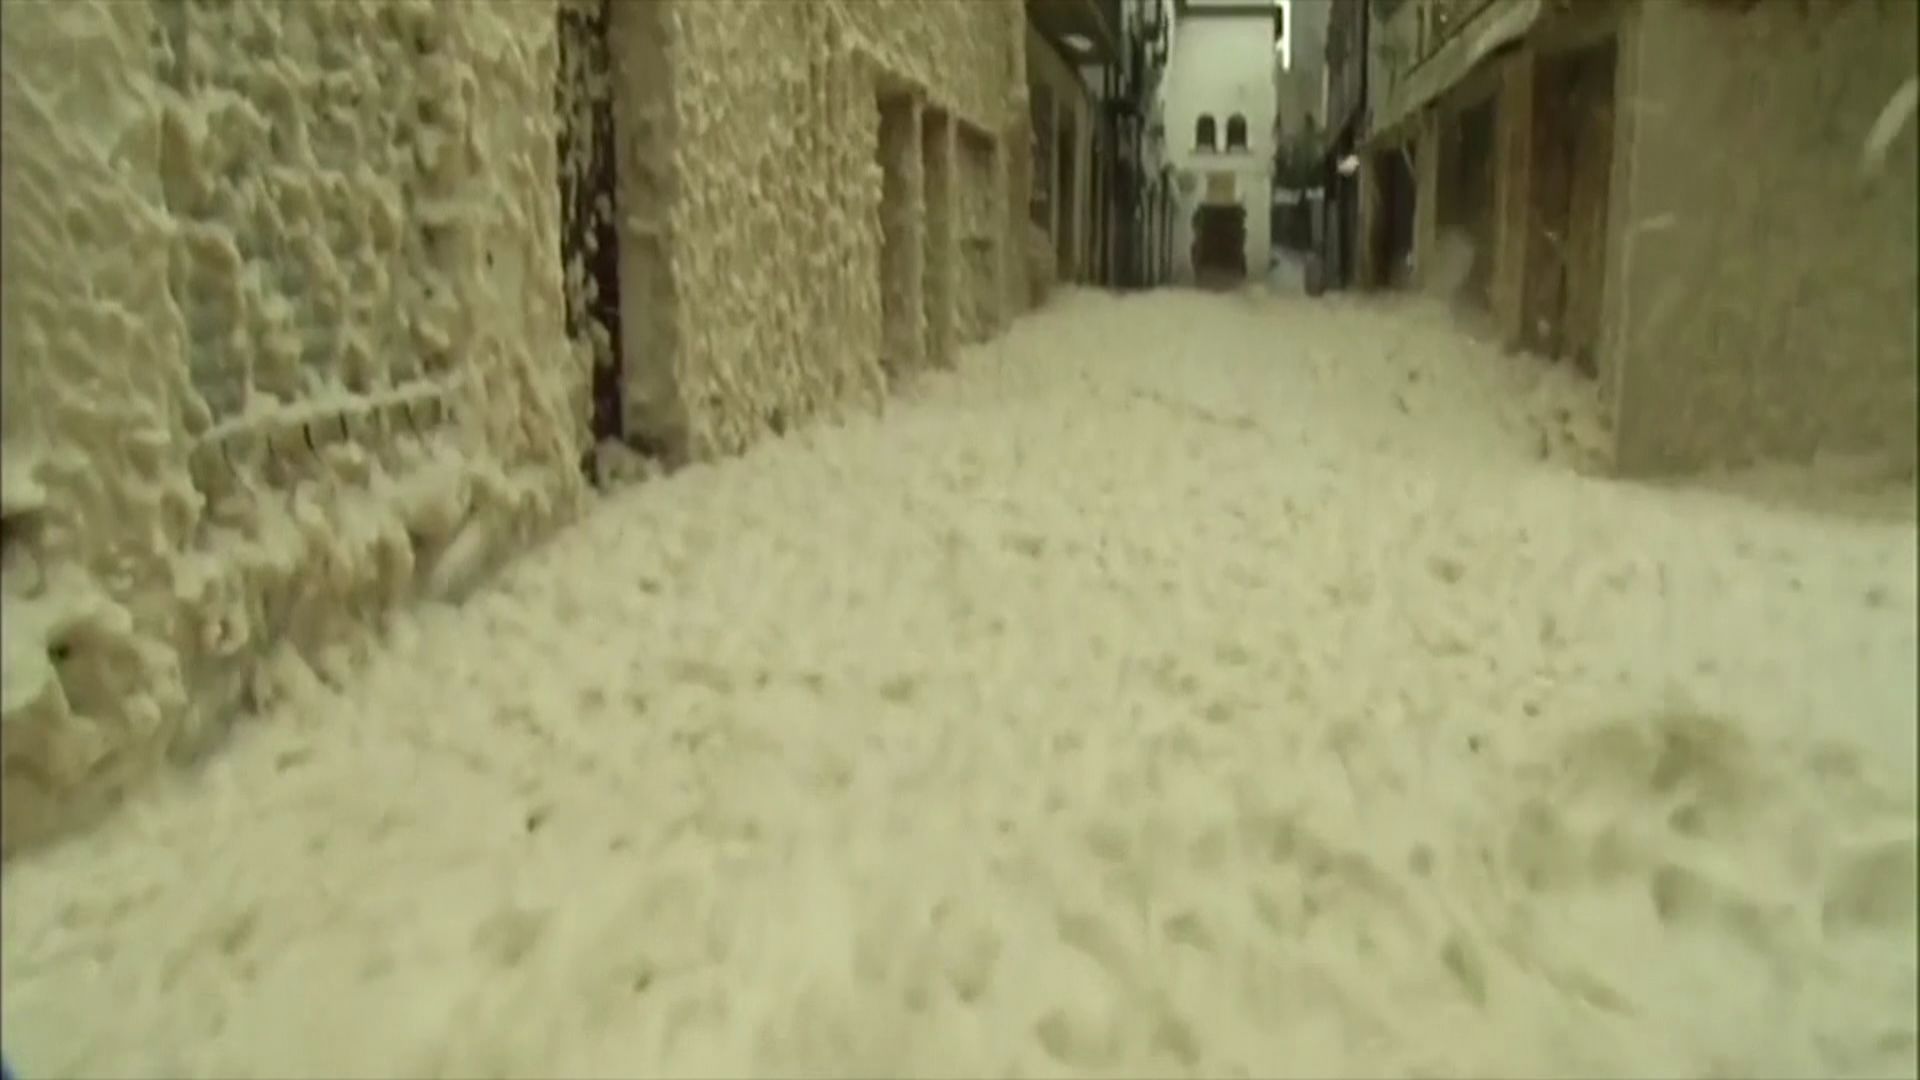 Espagne: une épaisse couche d'écume recouvre les rues de Tossa de Mar (vidéo)